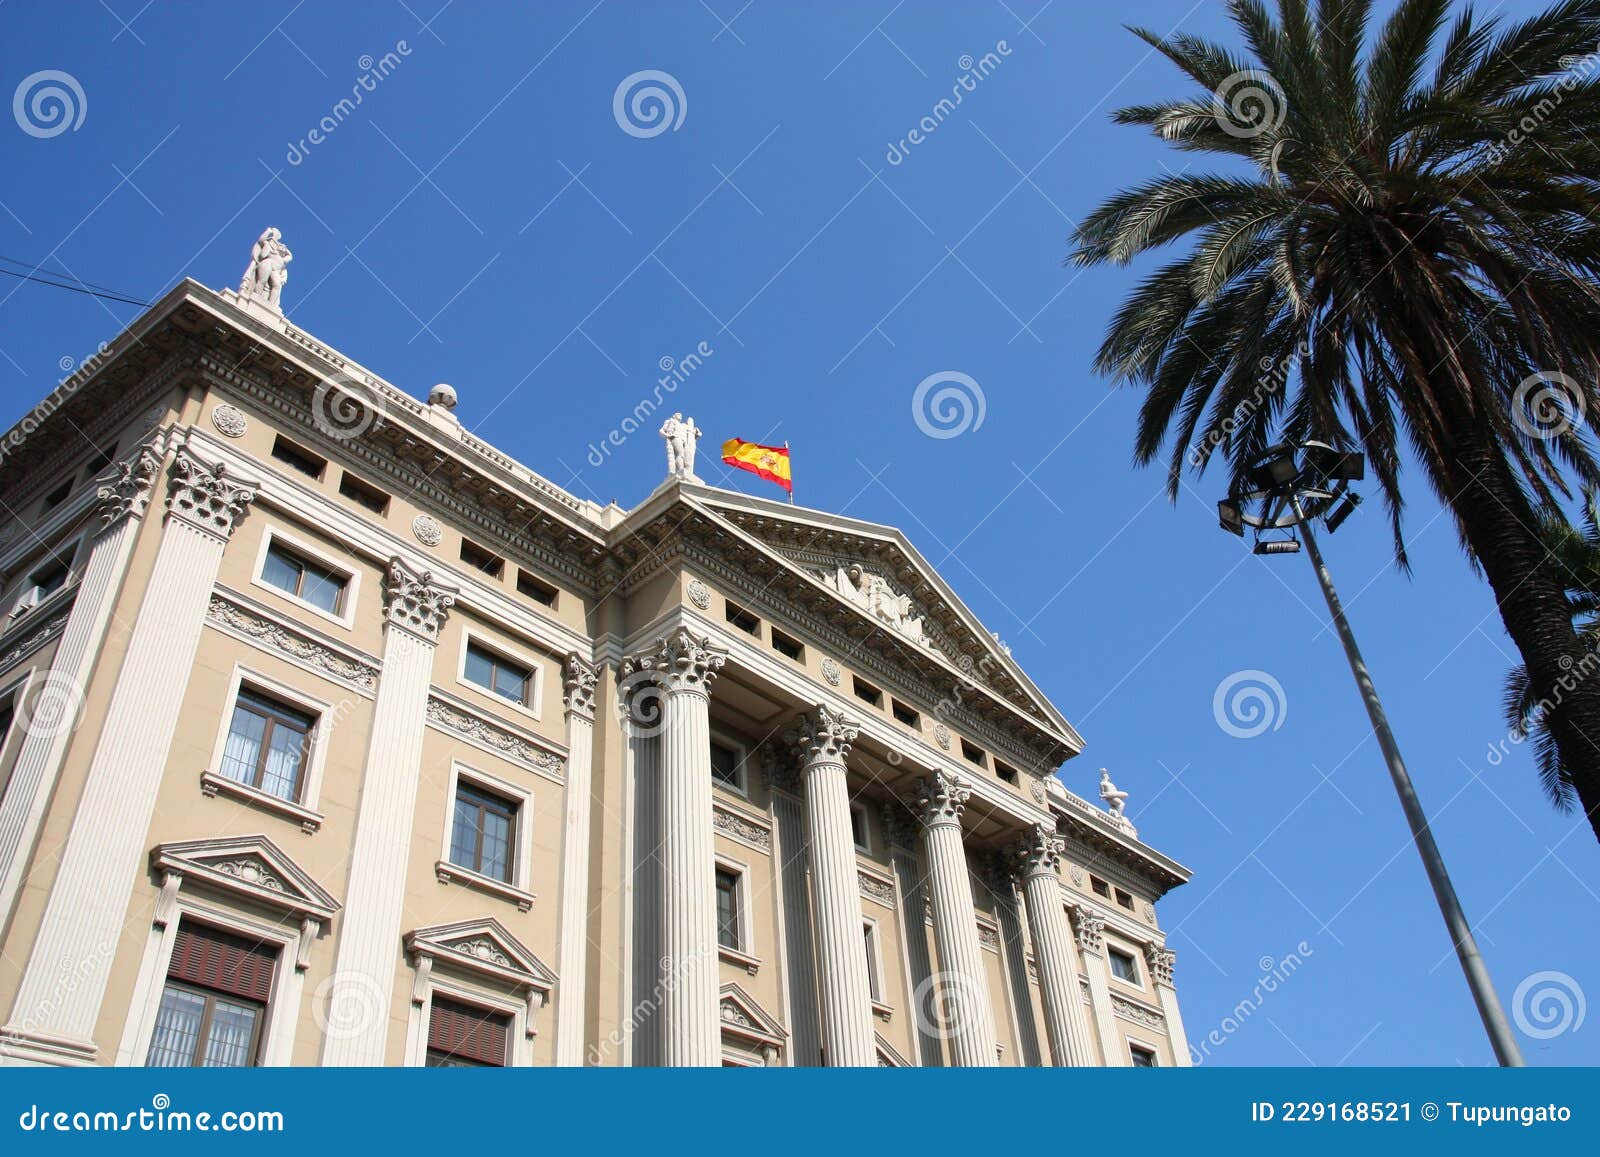 barcelona gobierno militar building